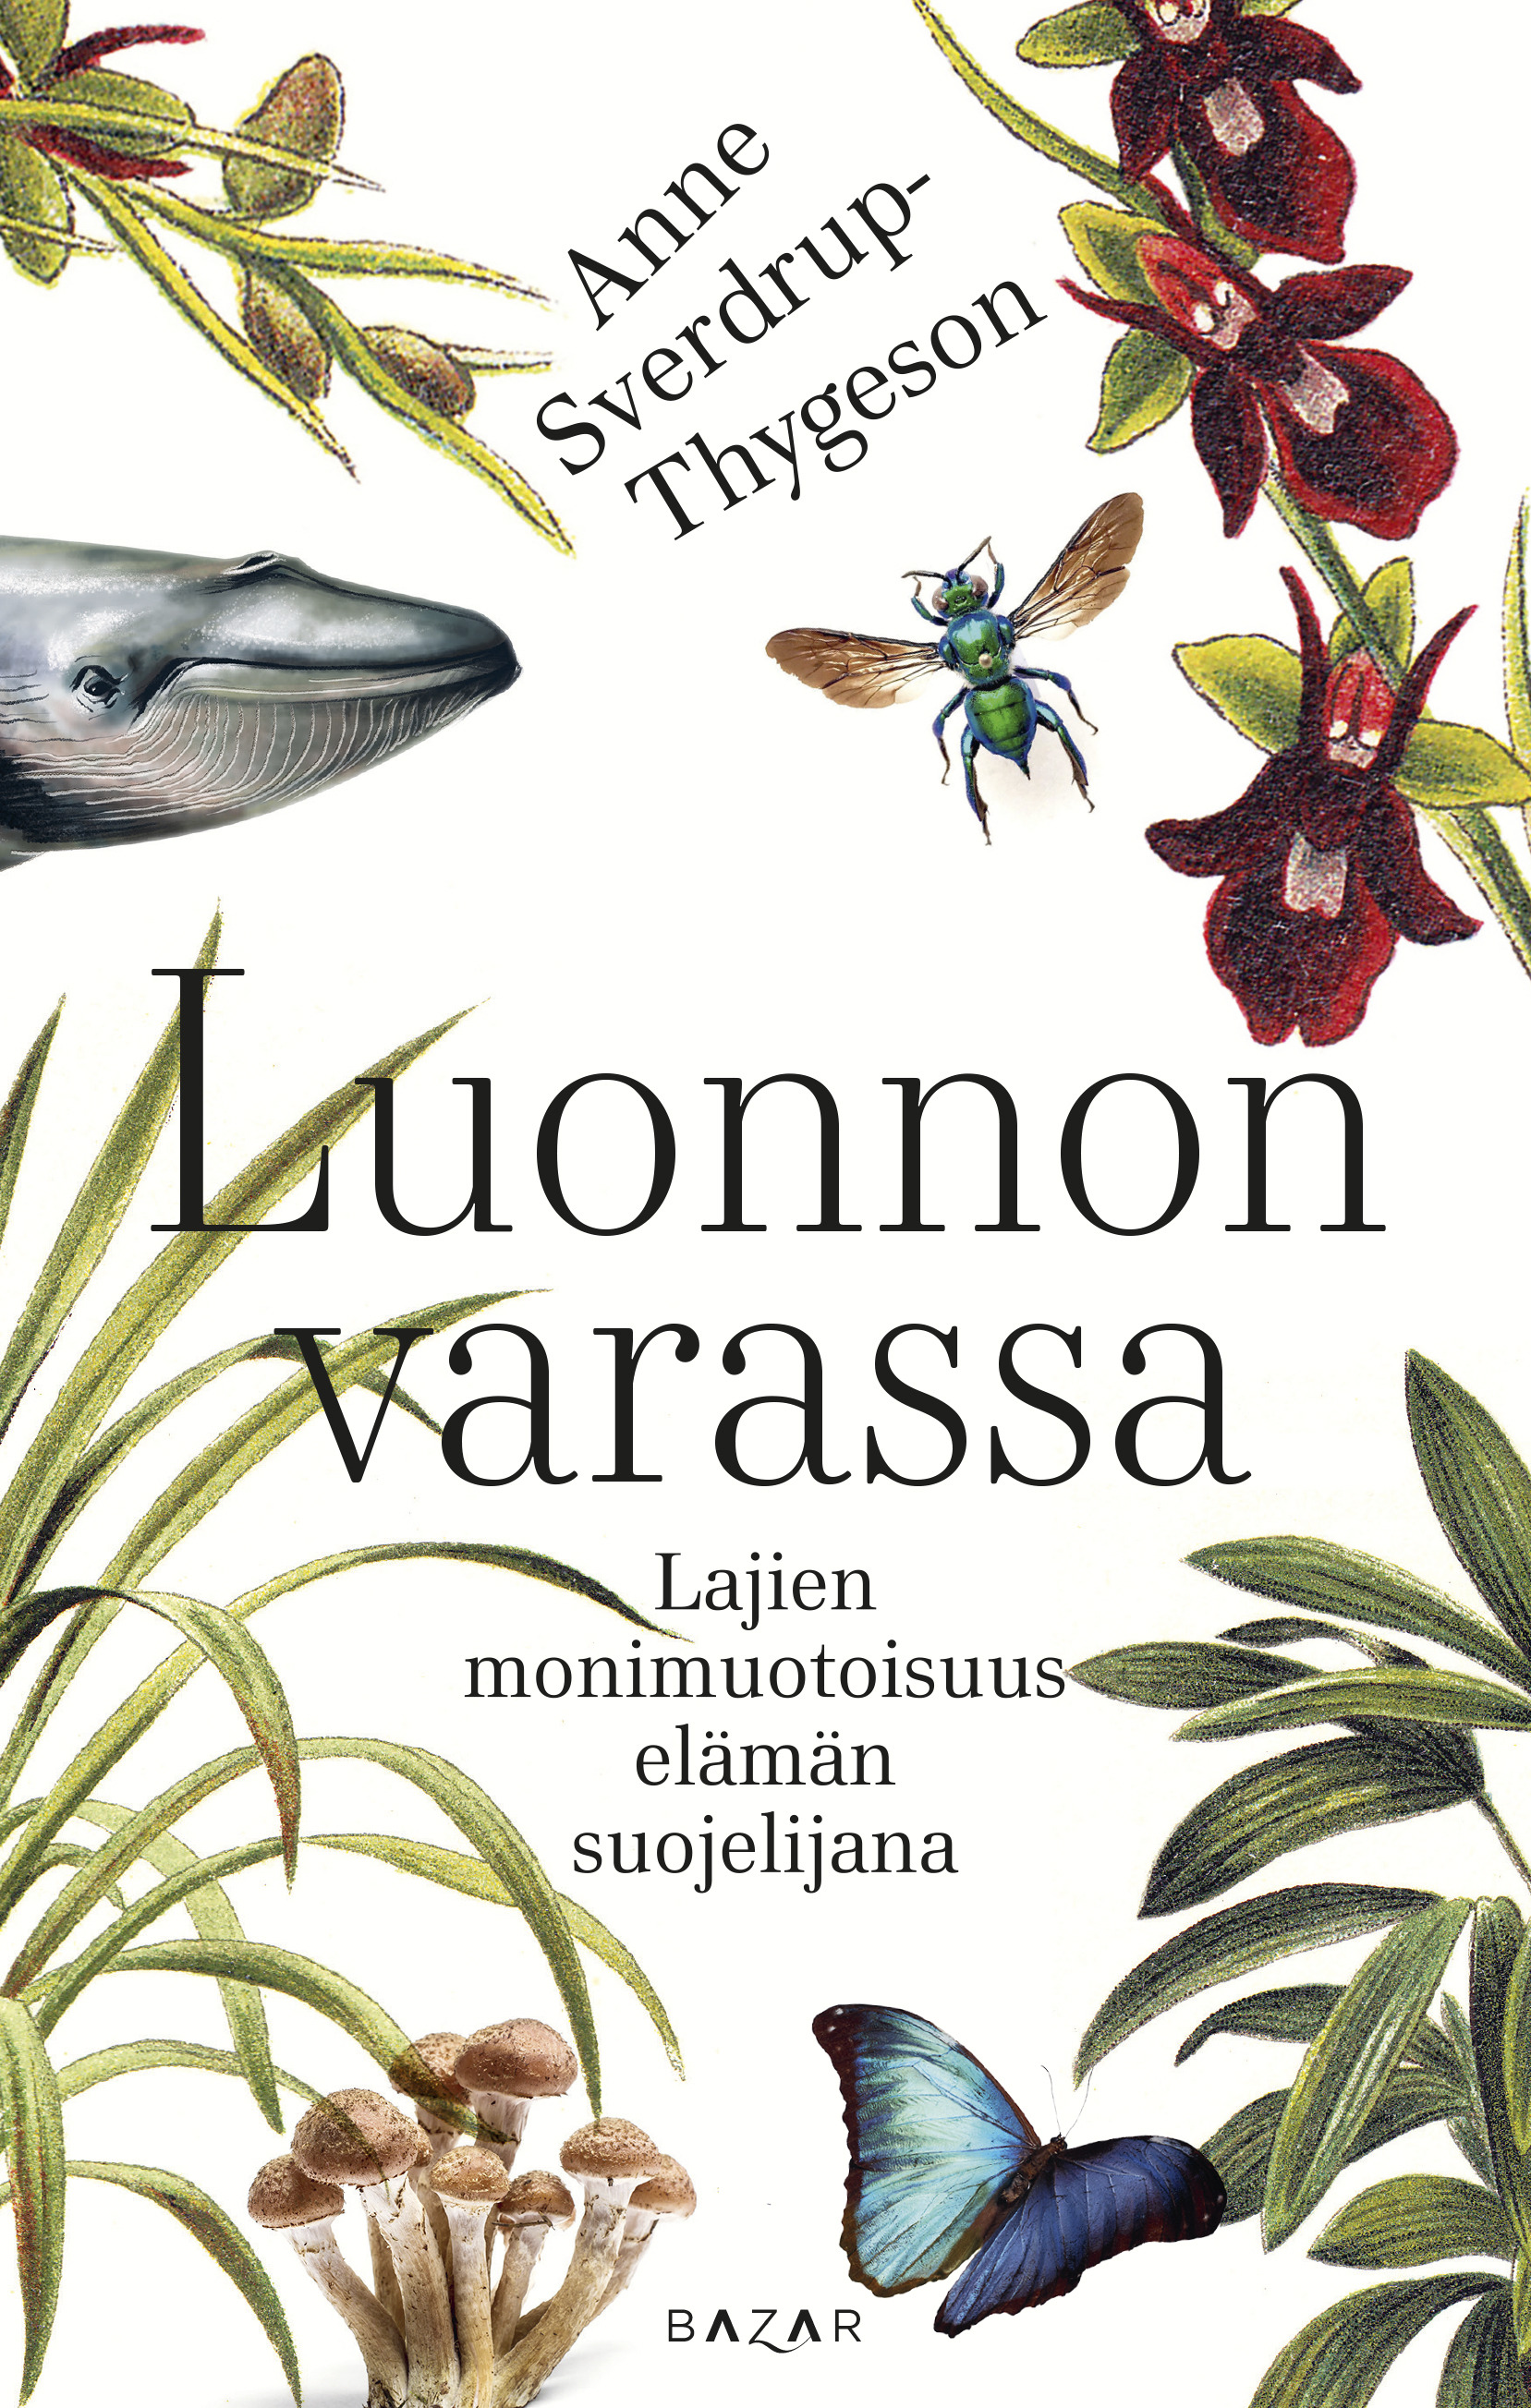 Sverdrup-Thygeson, Anne - Luonnon varassa: Lajien monimuotoisuus elämän suojelijana, e-kirja